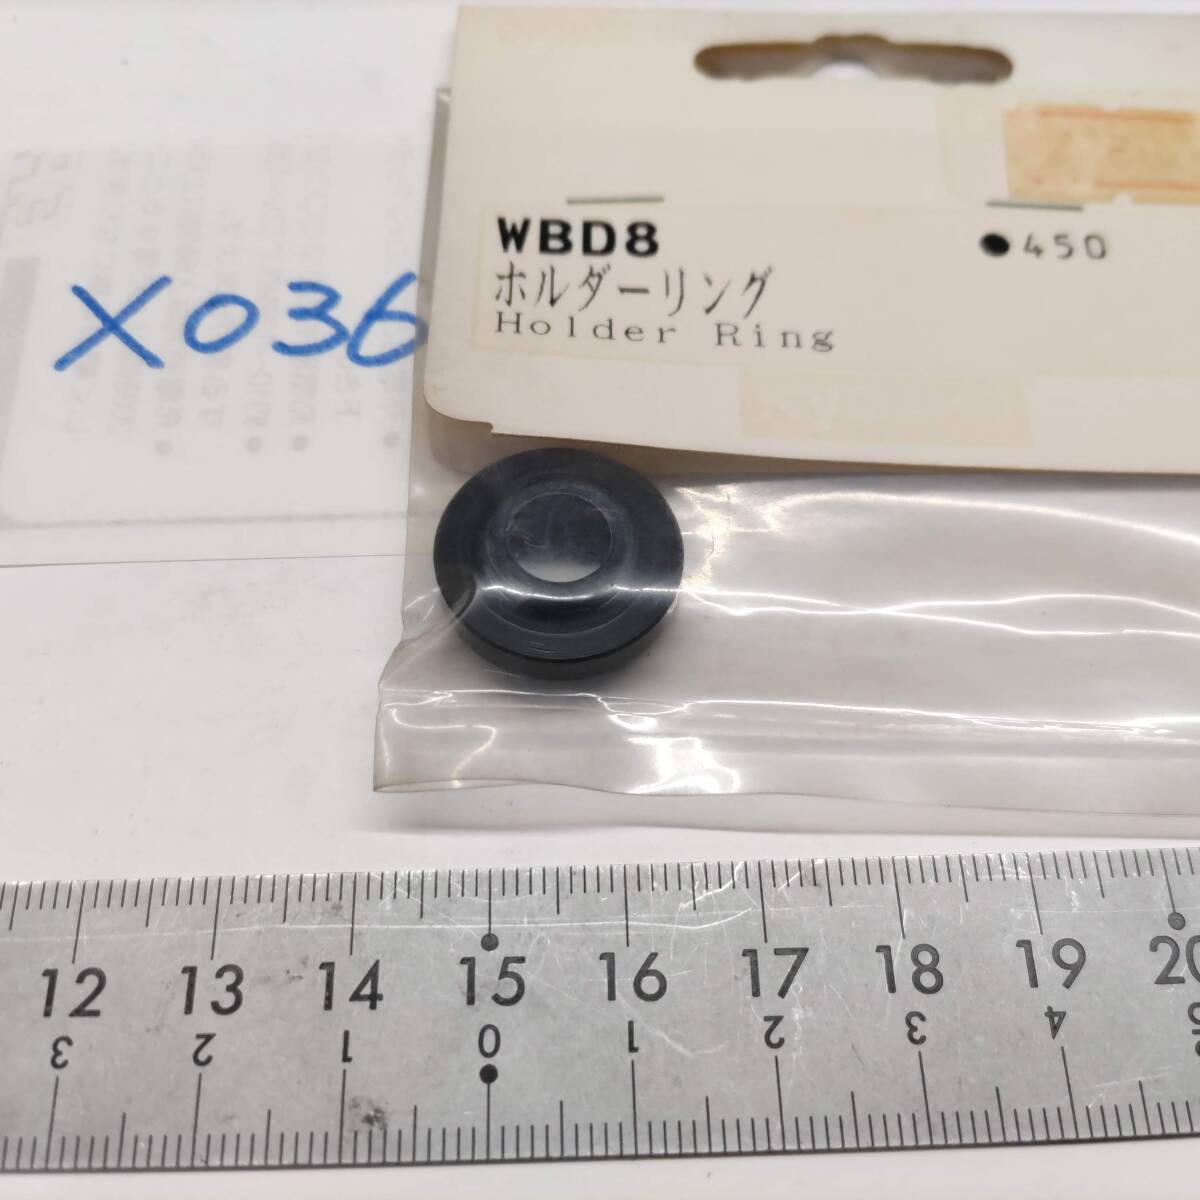 X036　KYOSHO 京商　WBD8 ホルダーリング Holder Ring　未開封 長期保管品_画像3